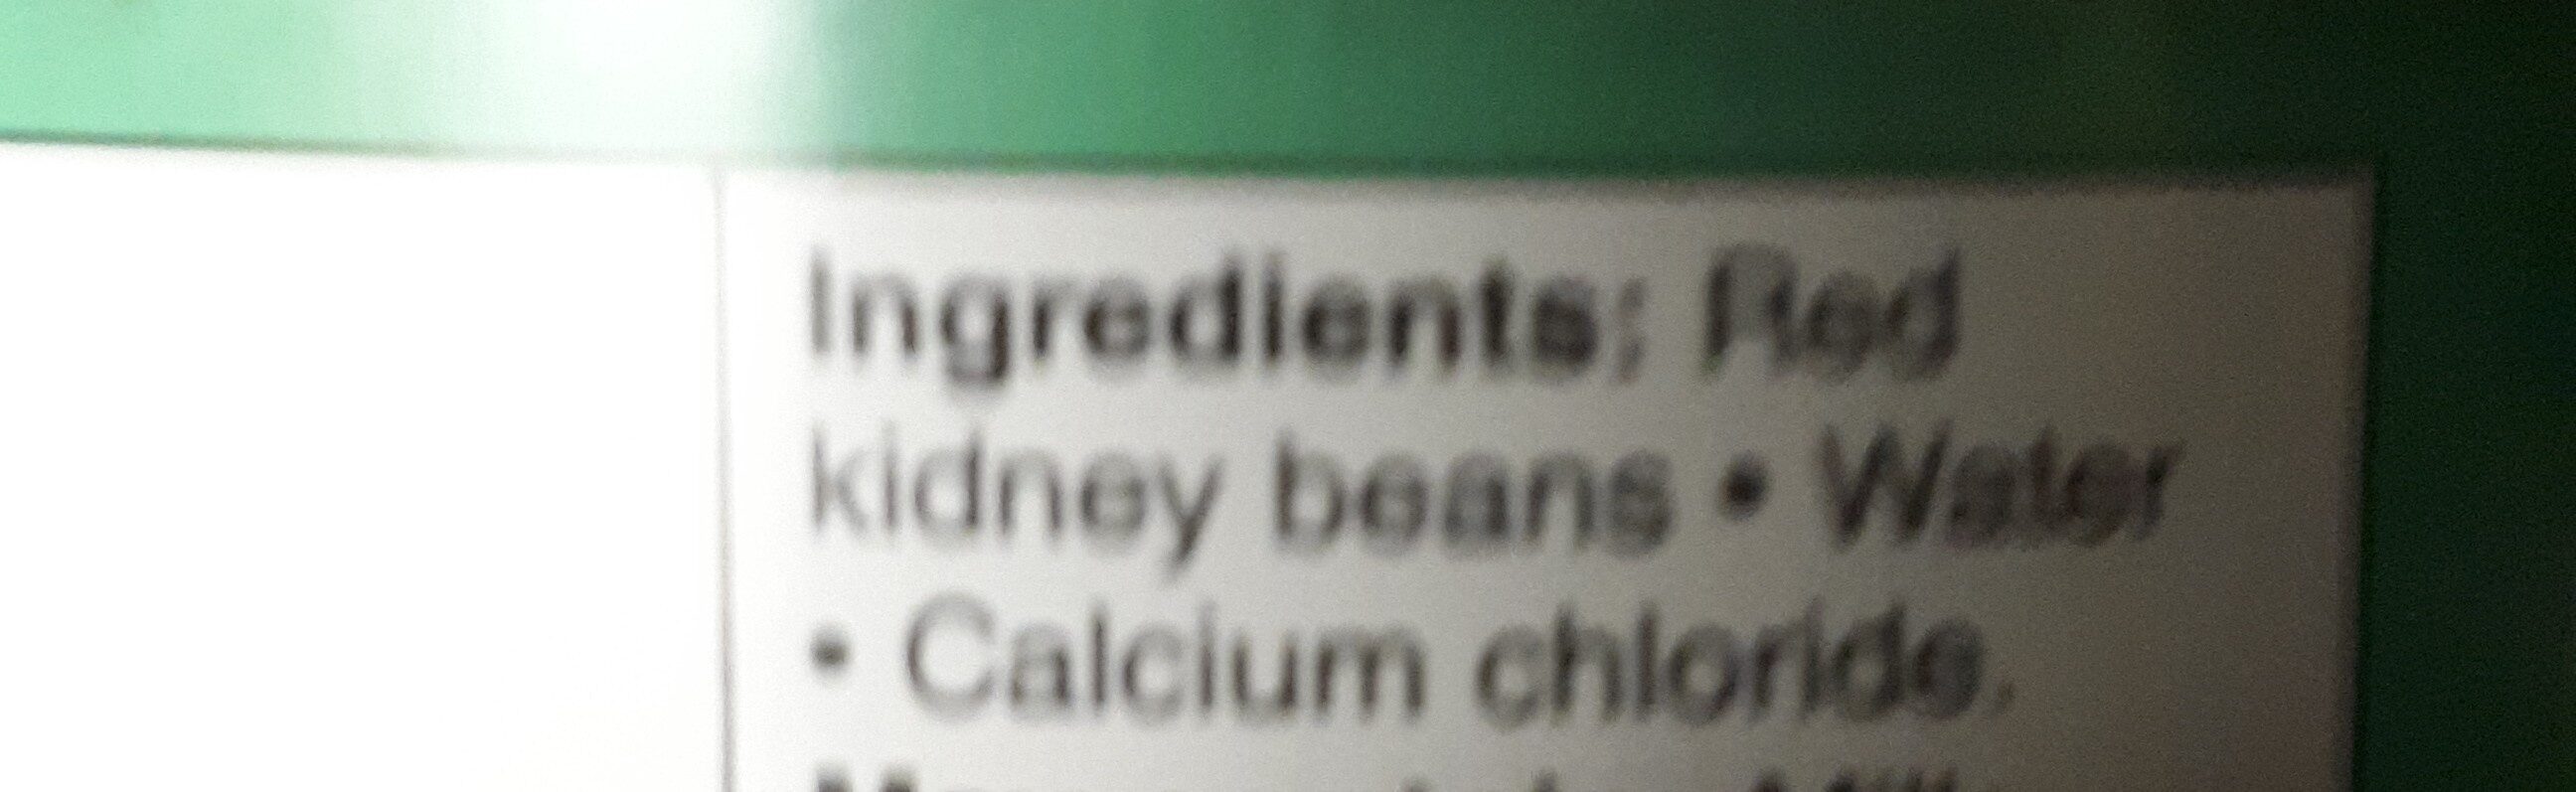 Red kidney beans - Ingrédients - en